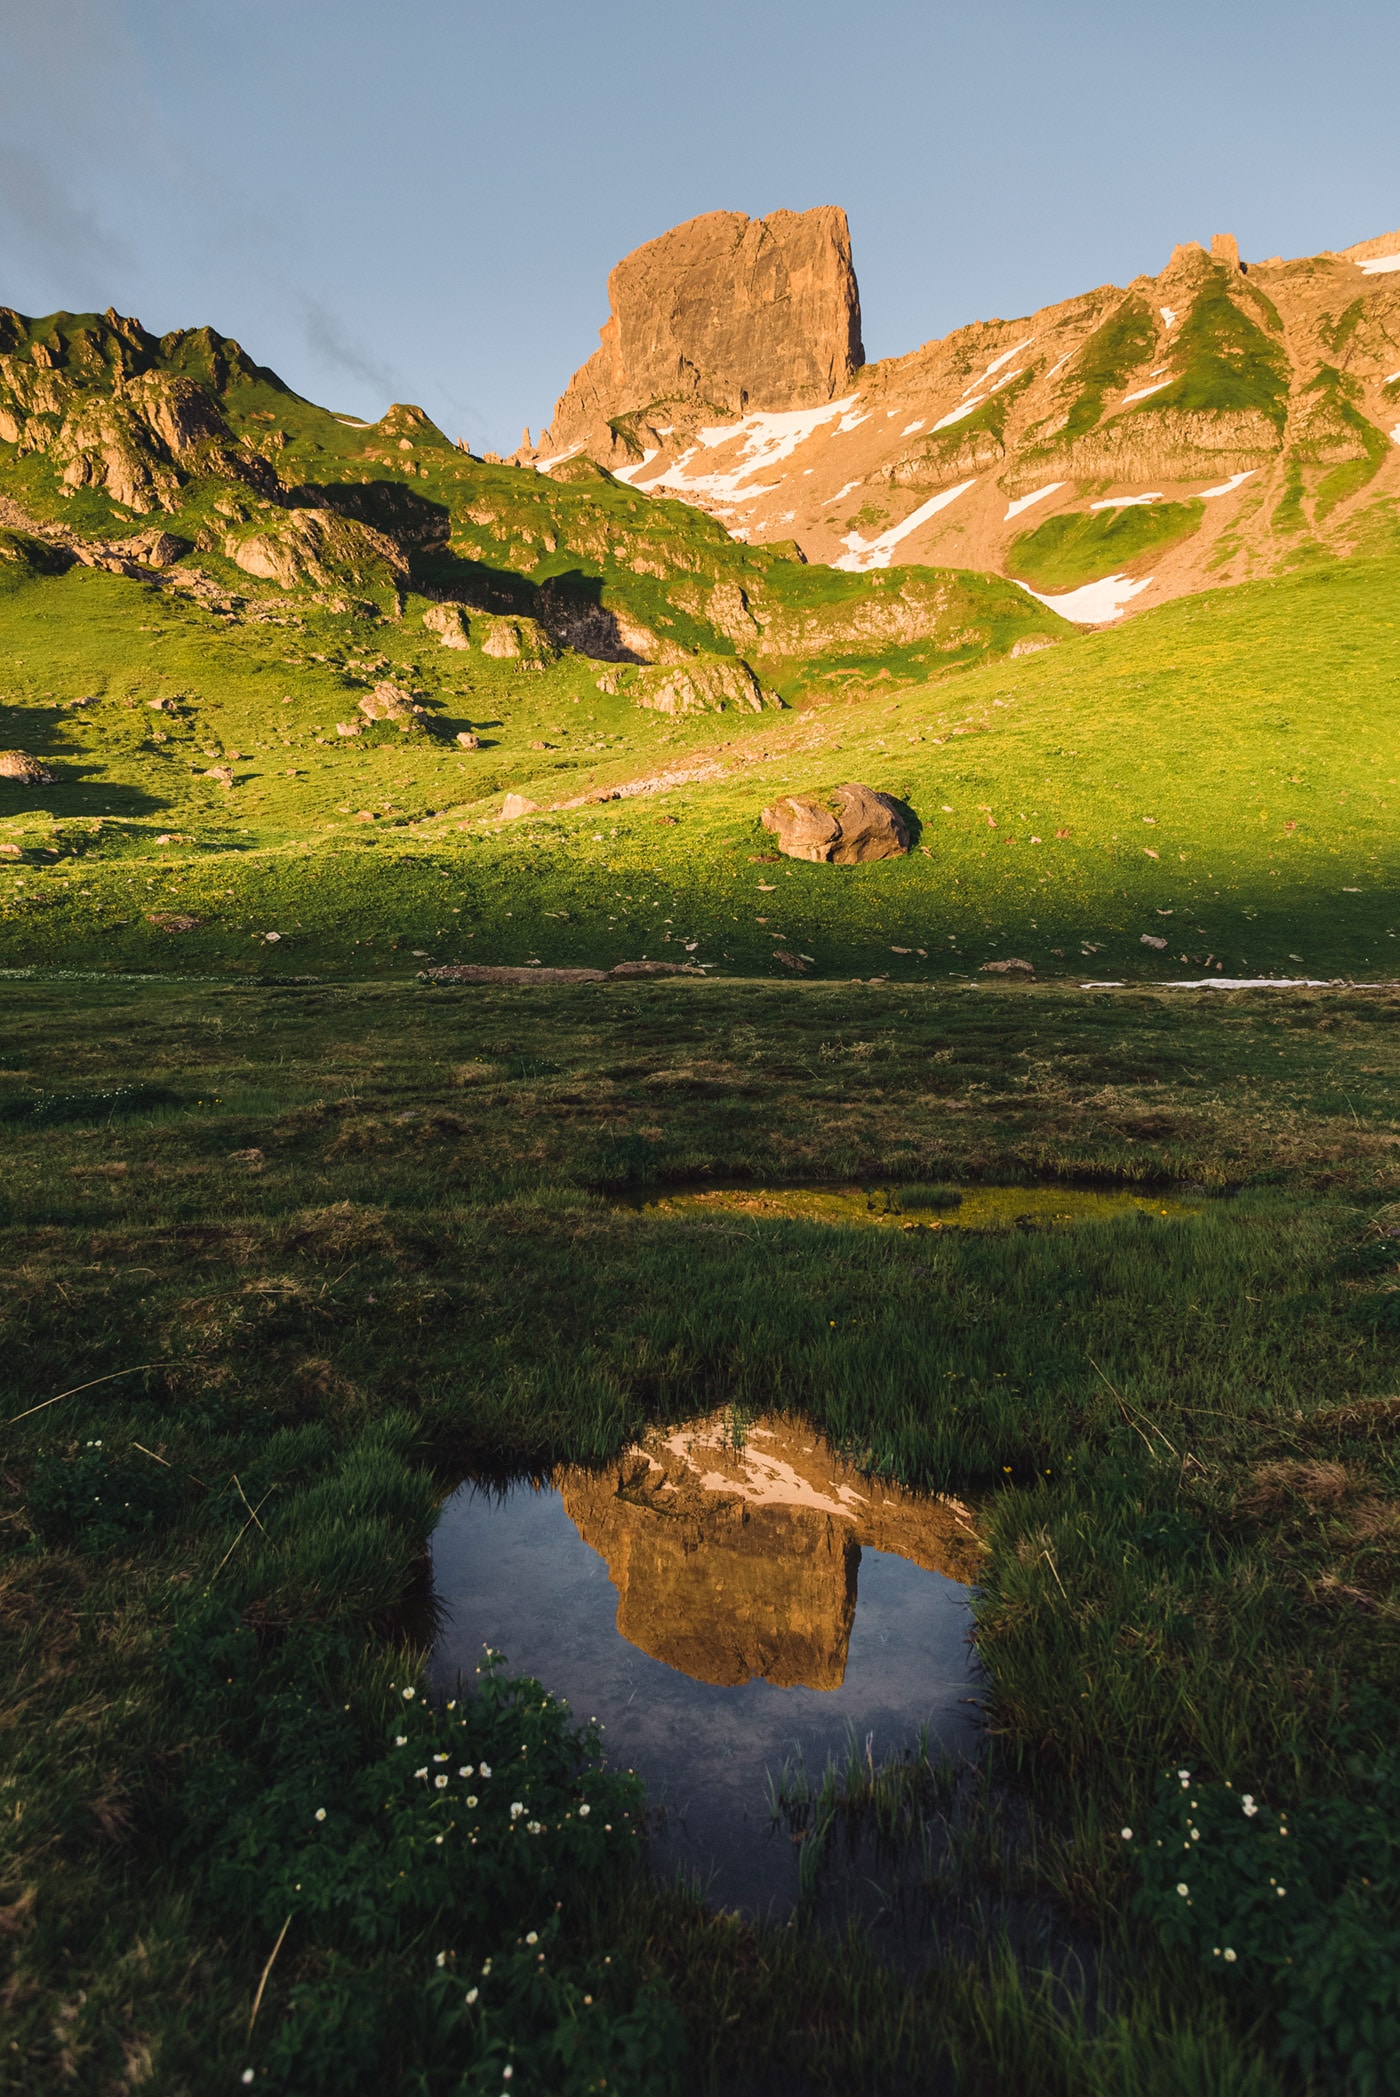 Reflet d'une montagne au premier plan de cette photo de paysage